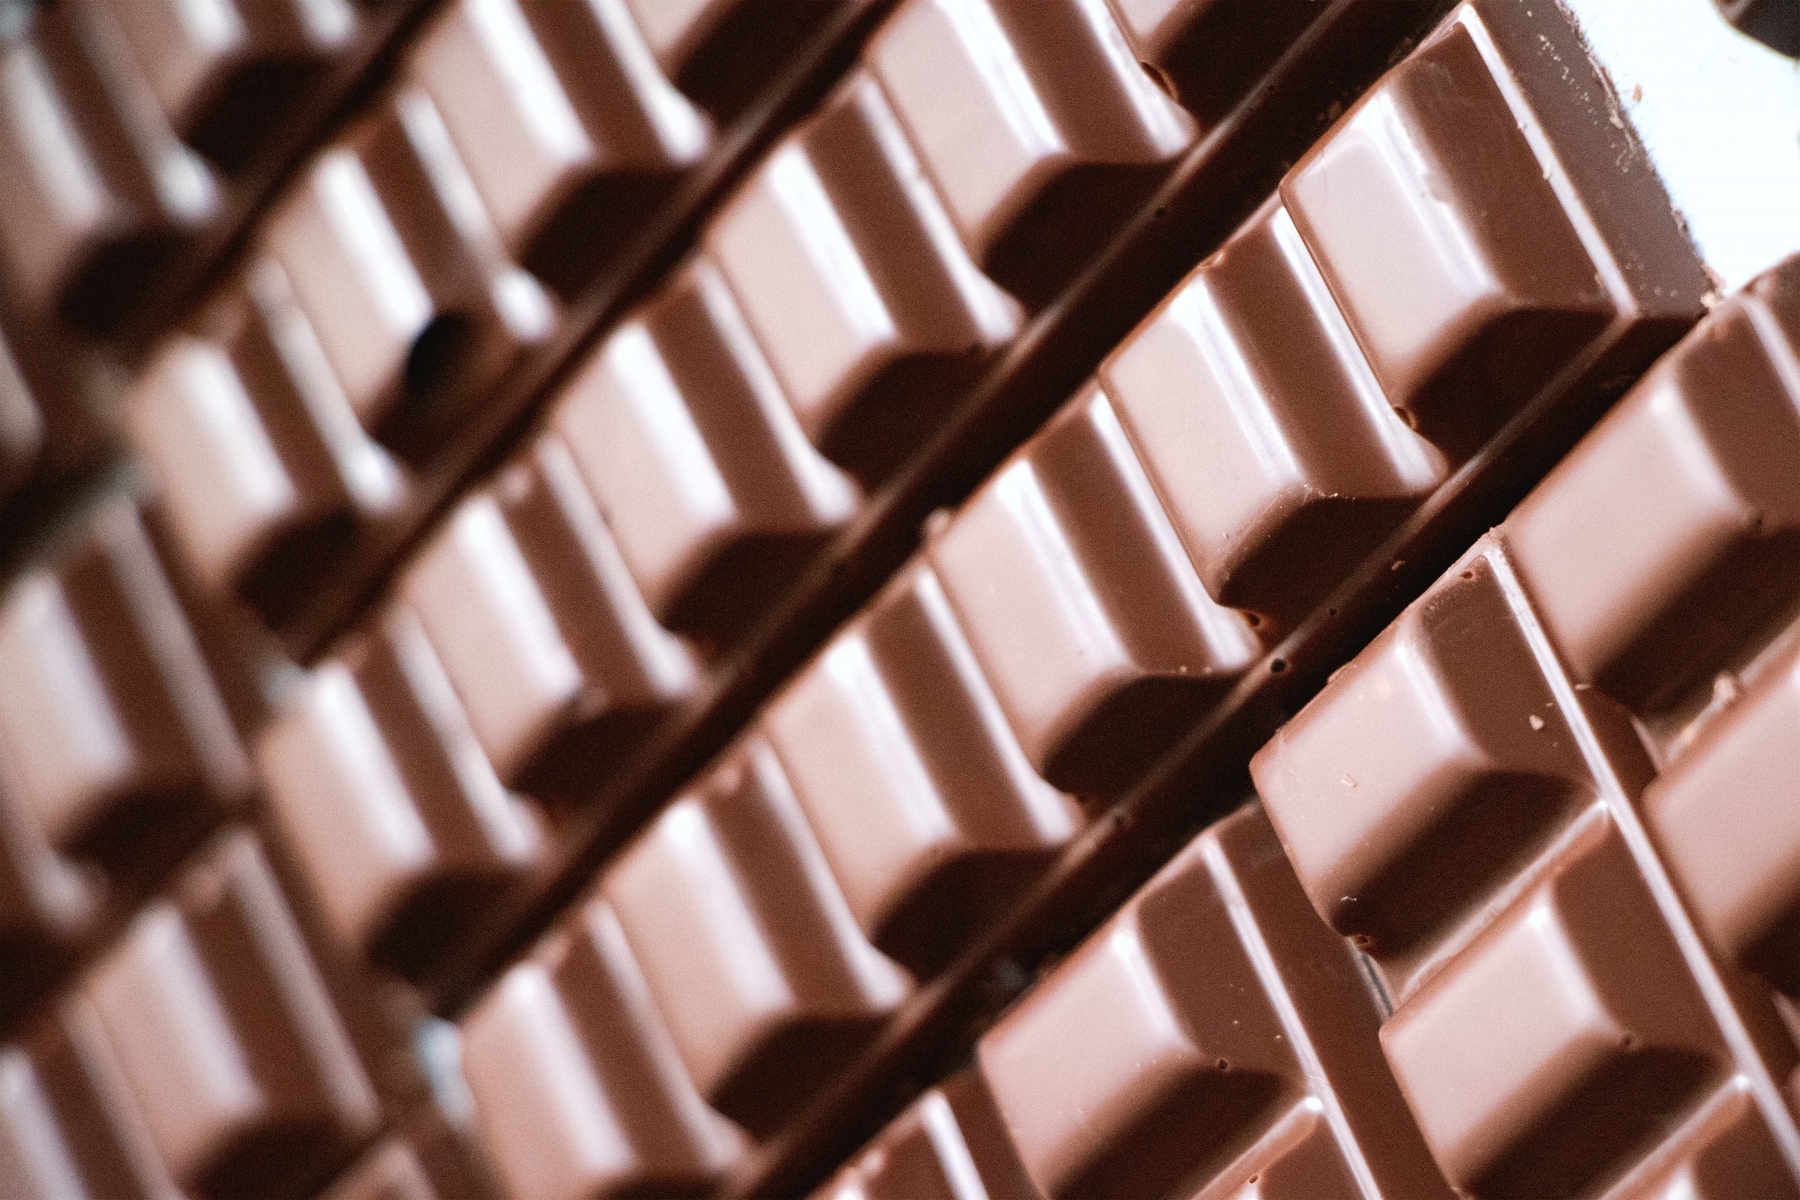 Θετικότητα ορμόνες: Πώς η σοκολάτα επηρεάζει θετικά τη διάθεση και τη λειτουργία του εγκεφάλου;